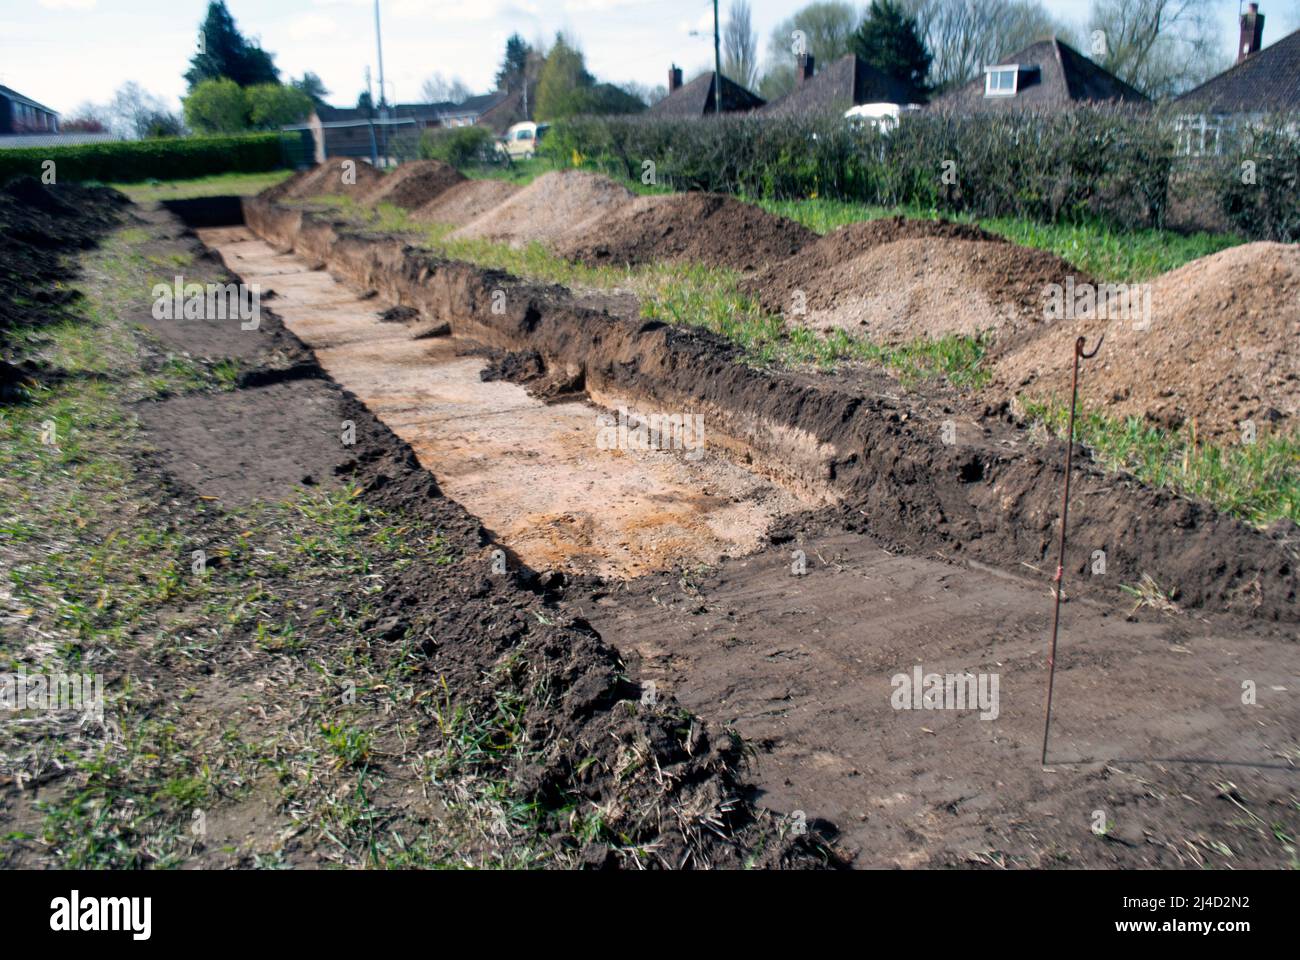 Trincheras excavadas en el campo para el estudio arqueológico junto al pueblo de Ruskington, Sleaford, Lincolnshire, Inglaterra, Reino Unido Foto de stock